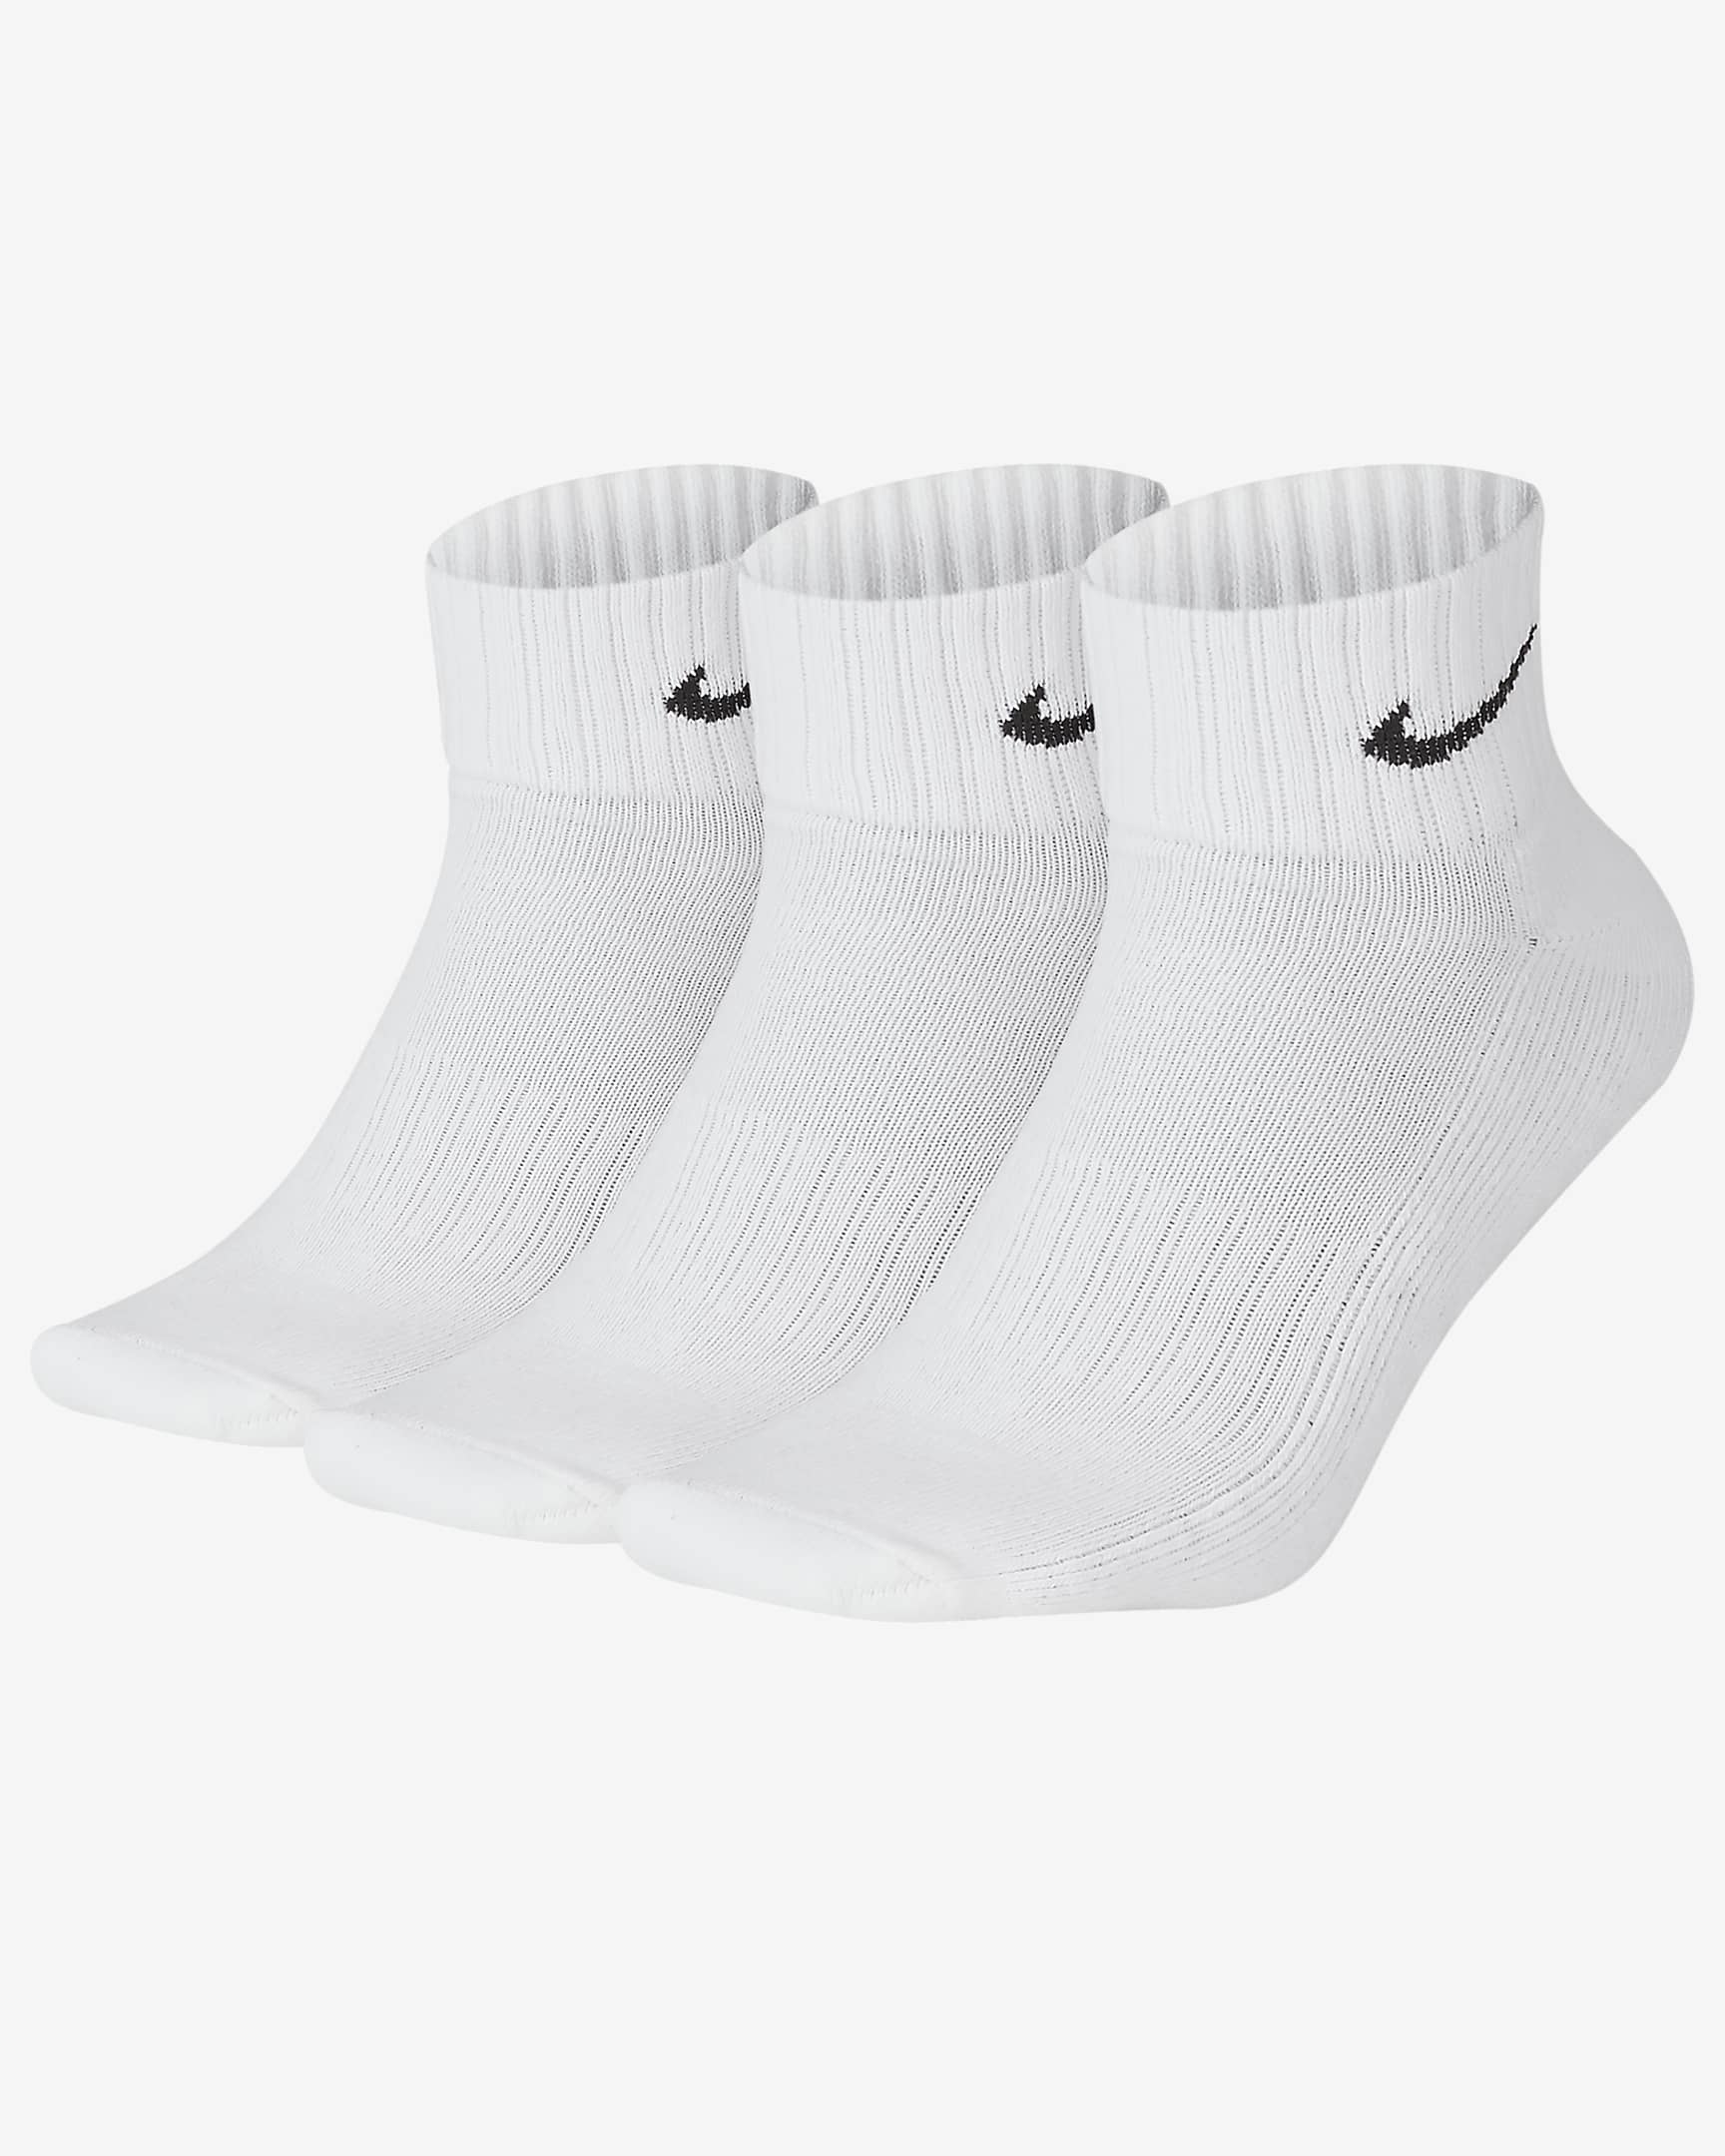 Socquettes rembourrées Nike (3 paires) - Blanc/Noir